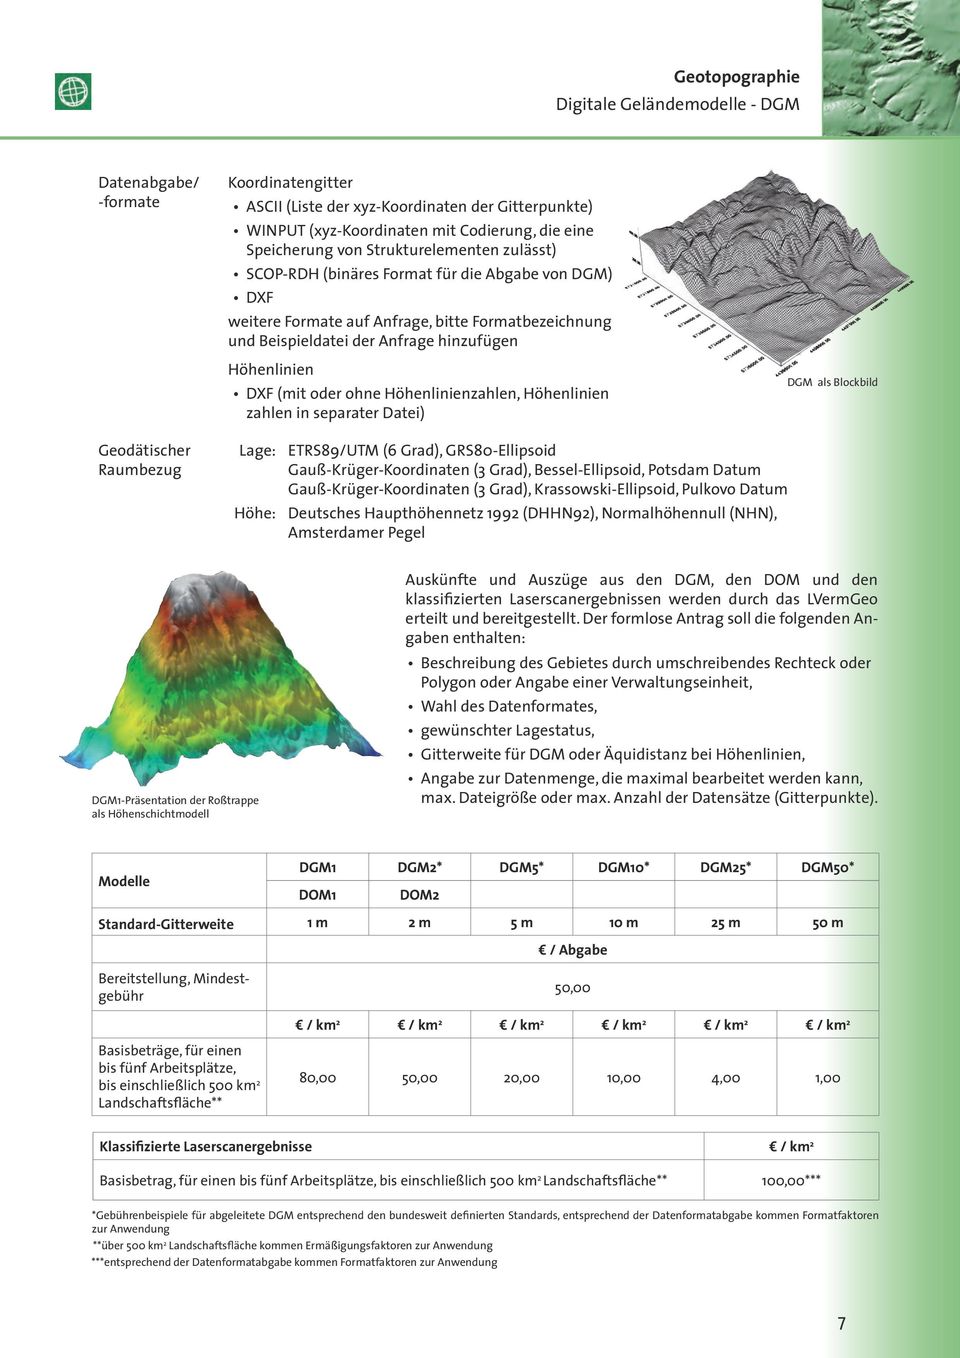 ohne Höhenlinienzahlen, Höhenlinien zahlen in separater Datei) DGM als Blockbild Geodätischer Raumbezug Lage: Höhe: ETRS89/UTM (6 Grad), GRS80-Ellipsoid Gauß-Krüger-Koordinaten (3 Grad),